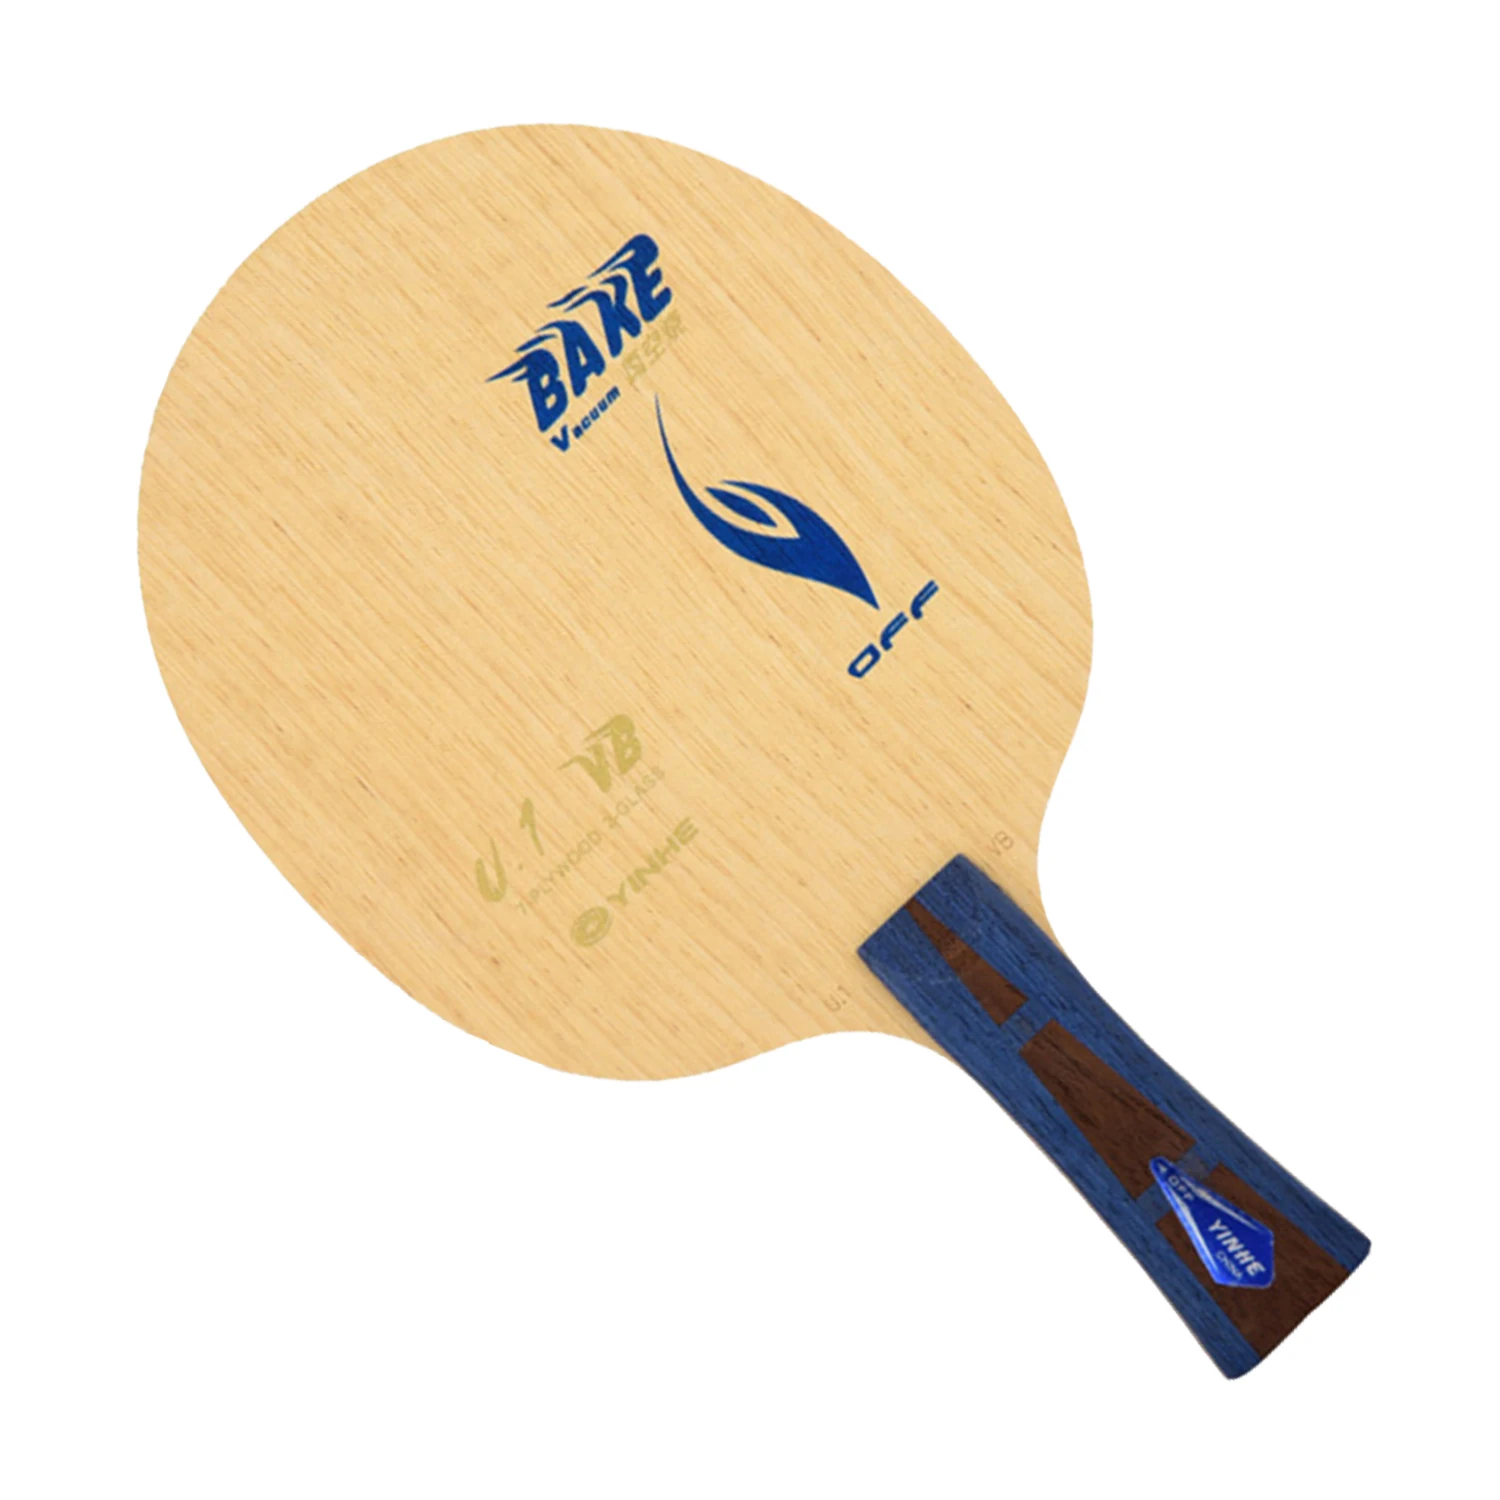 

Ракетка для настольного тенниса Yinhe U-1VB, ракетка для настольного тенниса, пинг-понга, 7 слоев, быстрая атака, с петлей